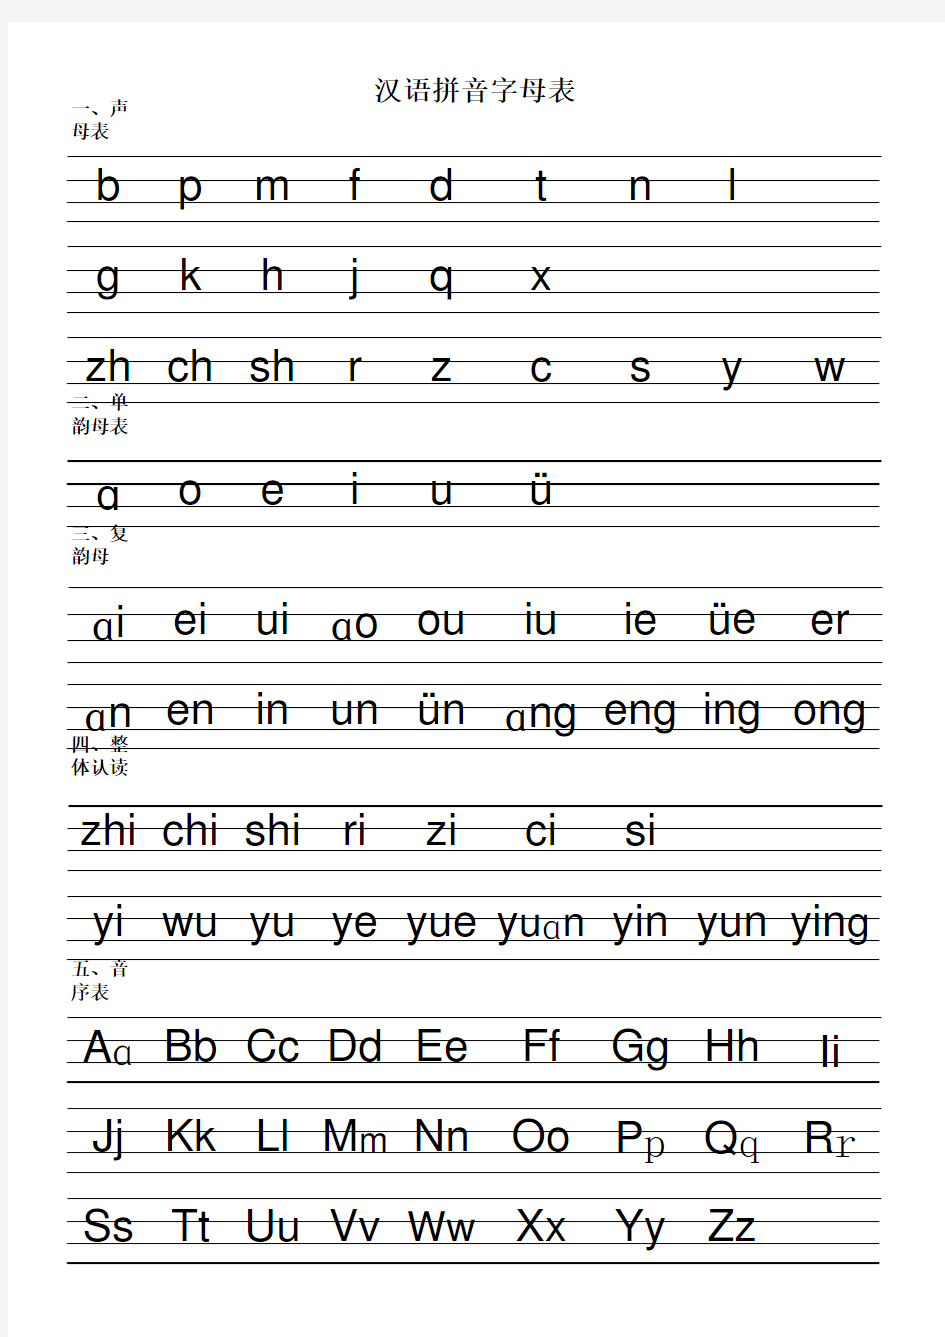 拼音字母及音序表四线格大小写书写规范